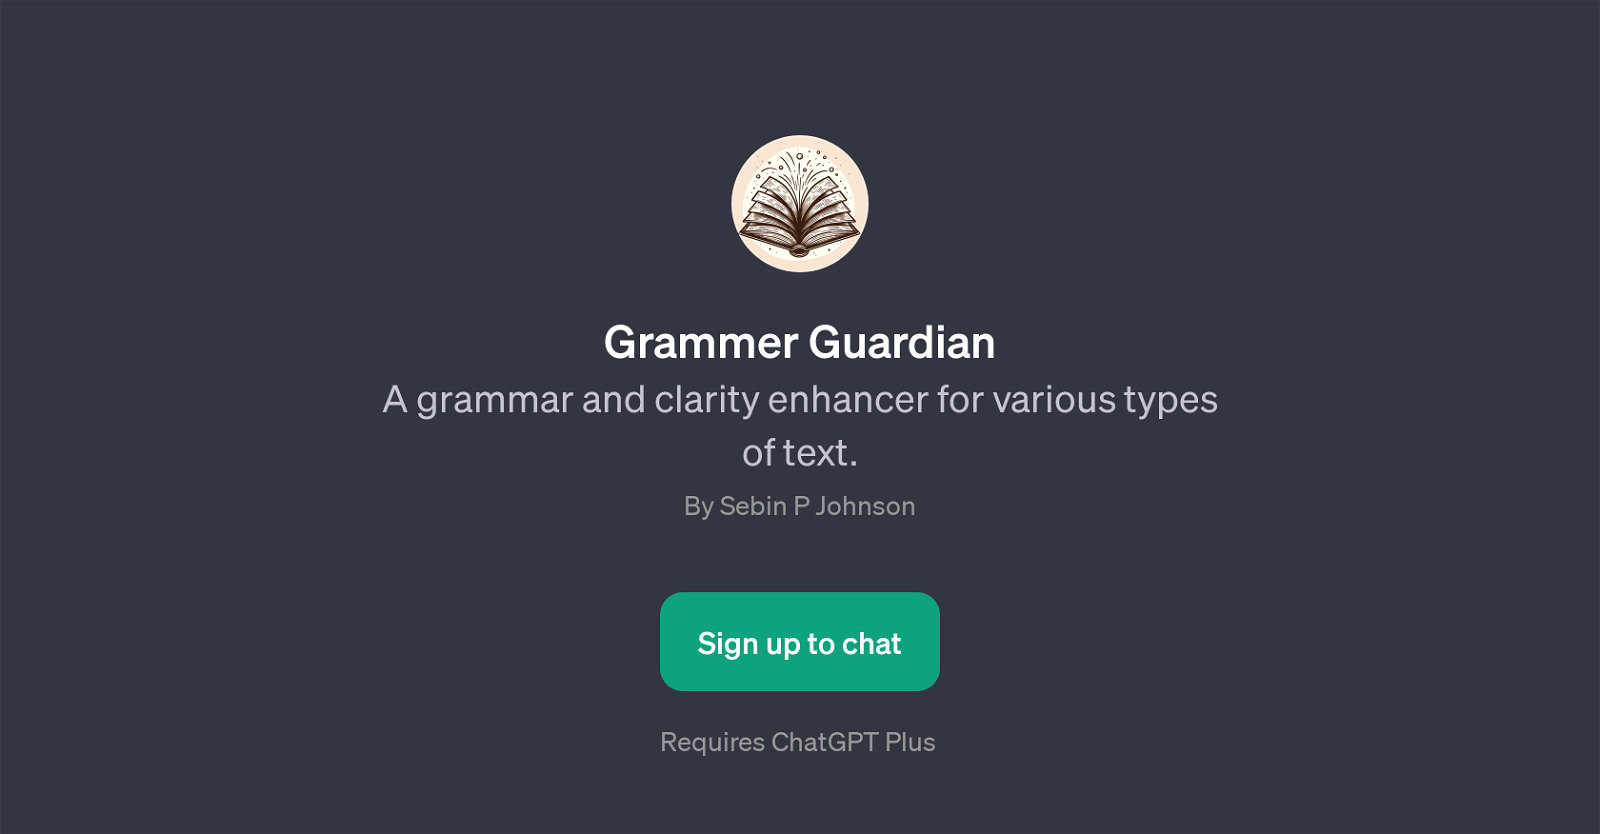 Grammer Guardian website